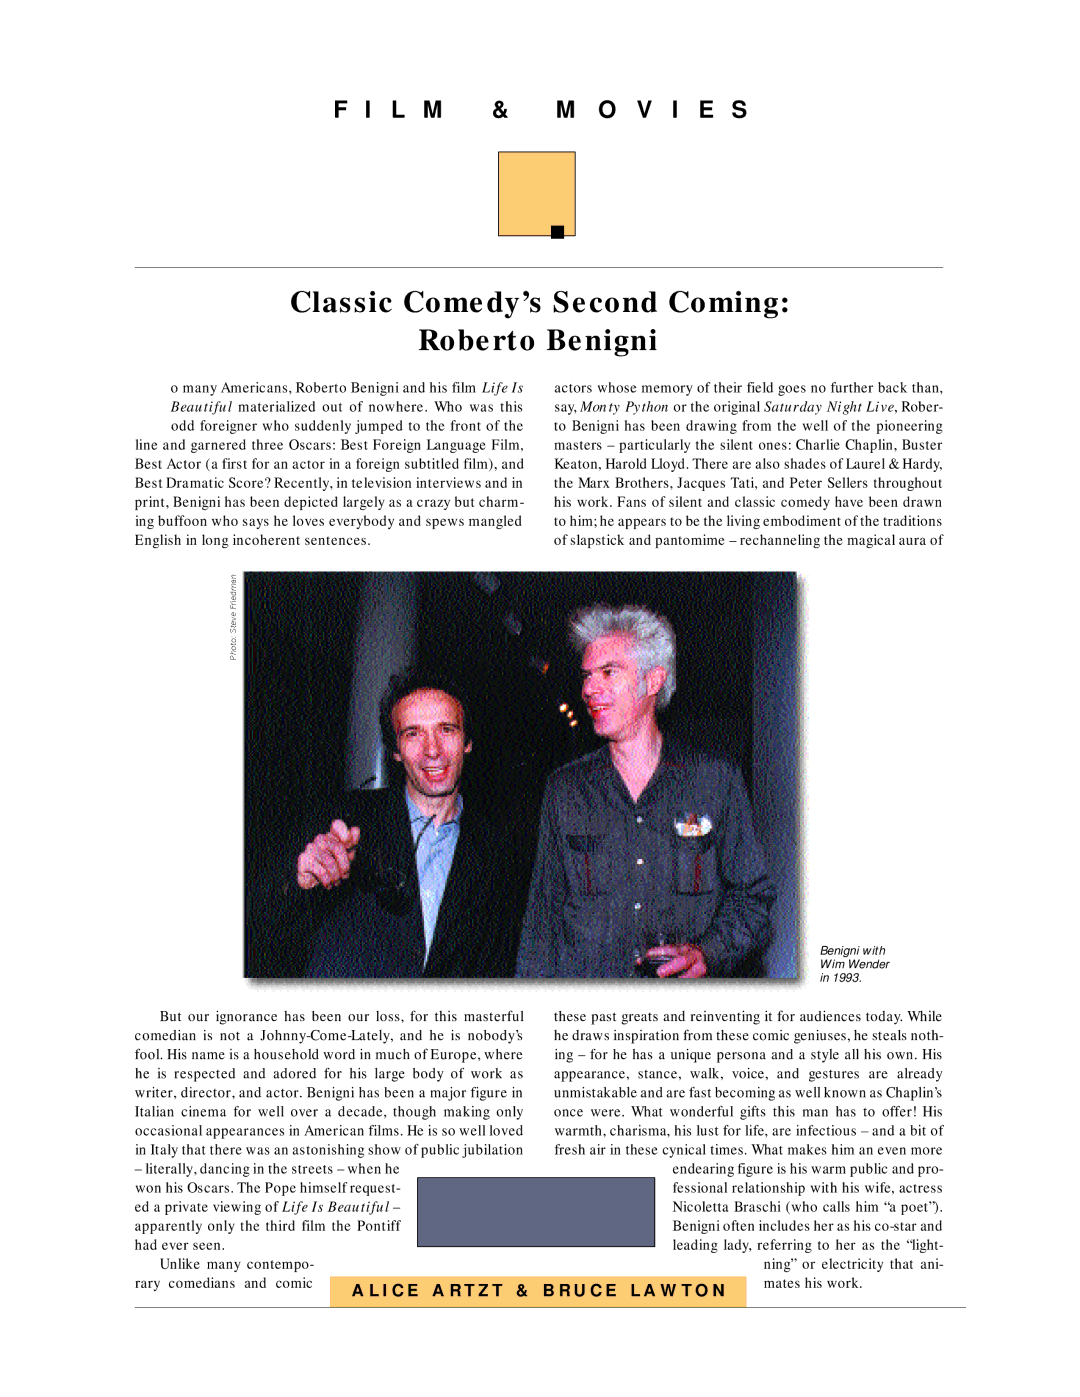 Sony G90 manual Classic Comedy’s Second Coming Roberto Benigni, L M & M O V I E S 